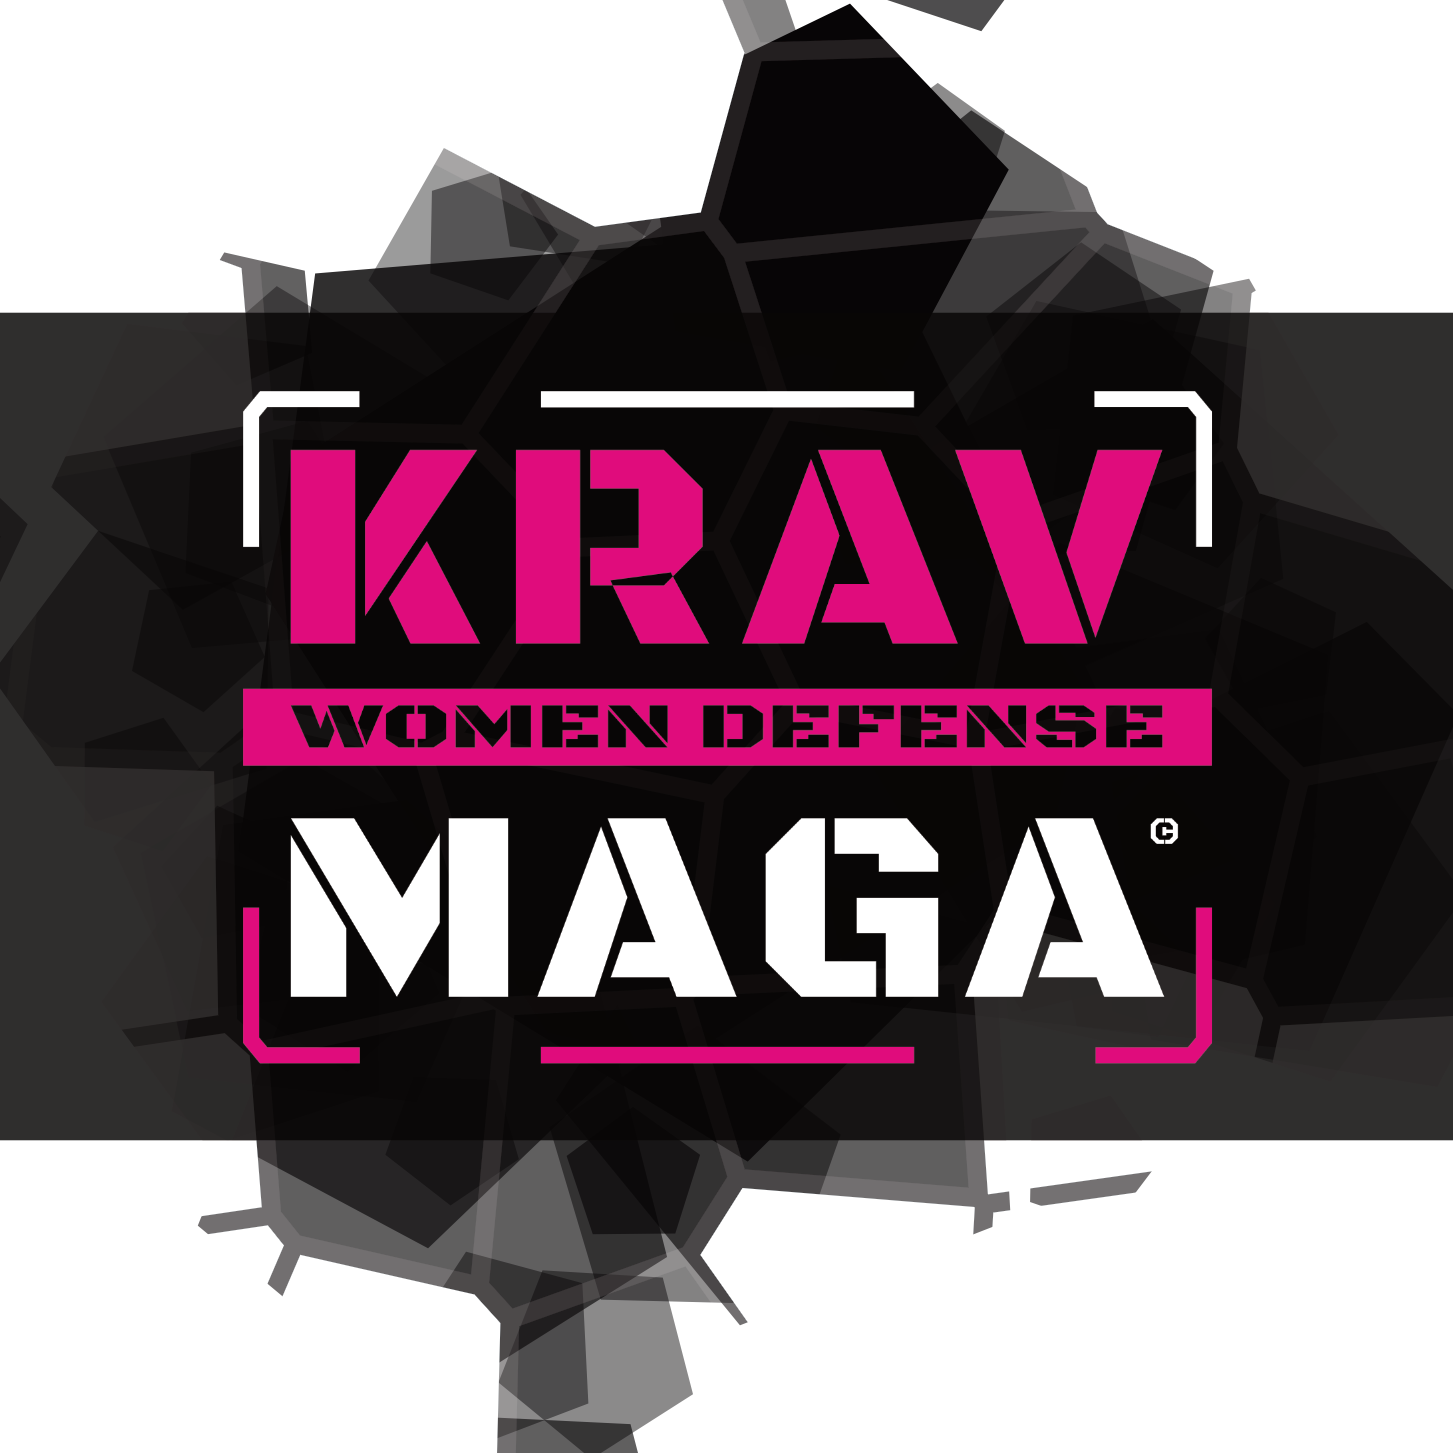 KRAV MAGA Women Defense